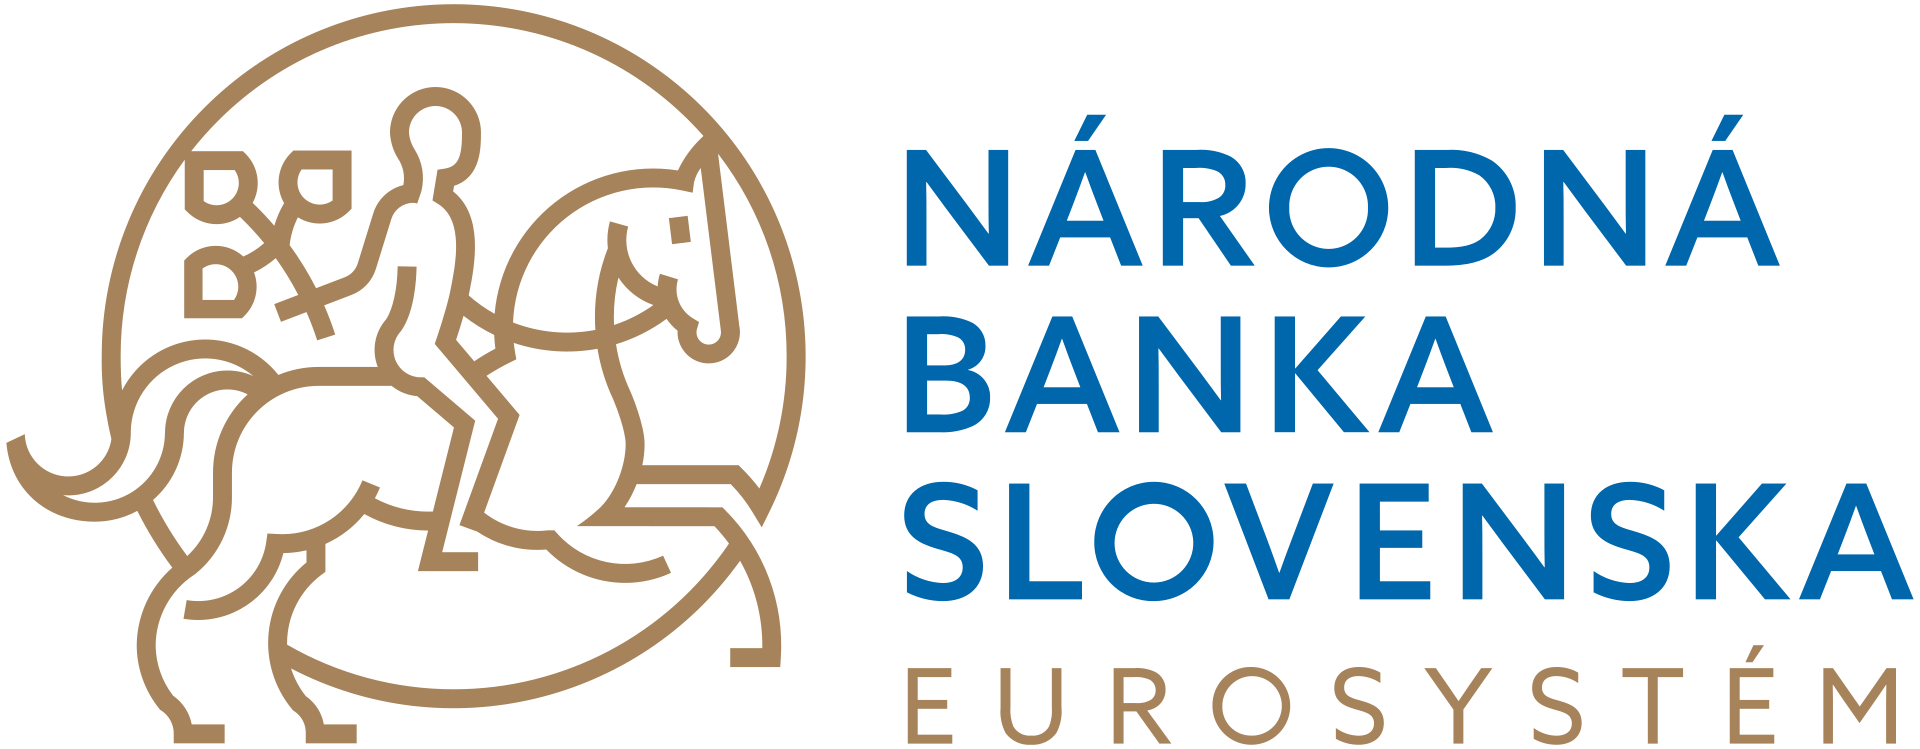 Narodowy Bank Słowacji